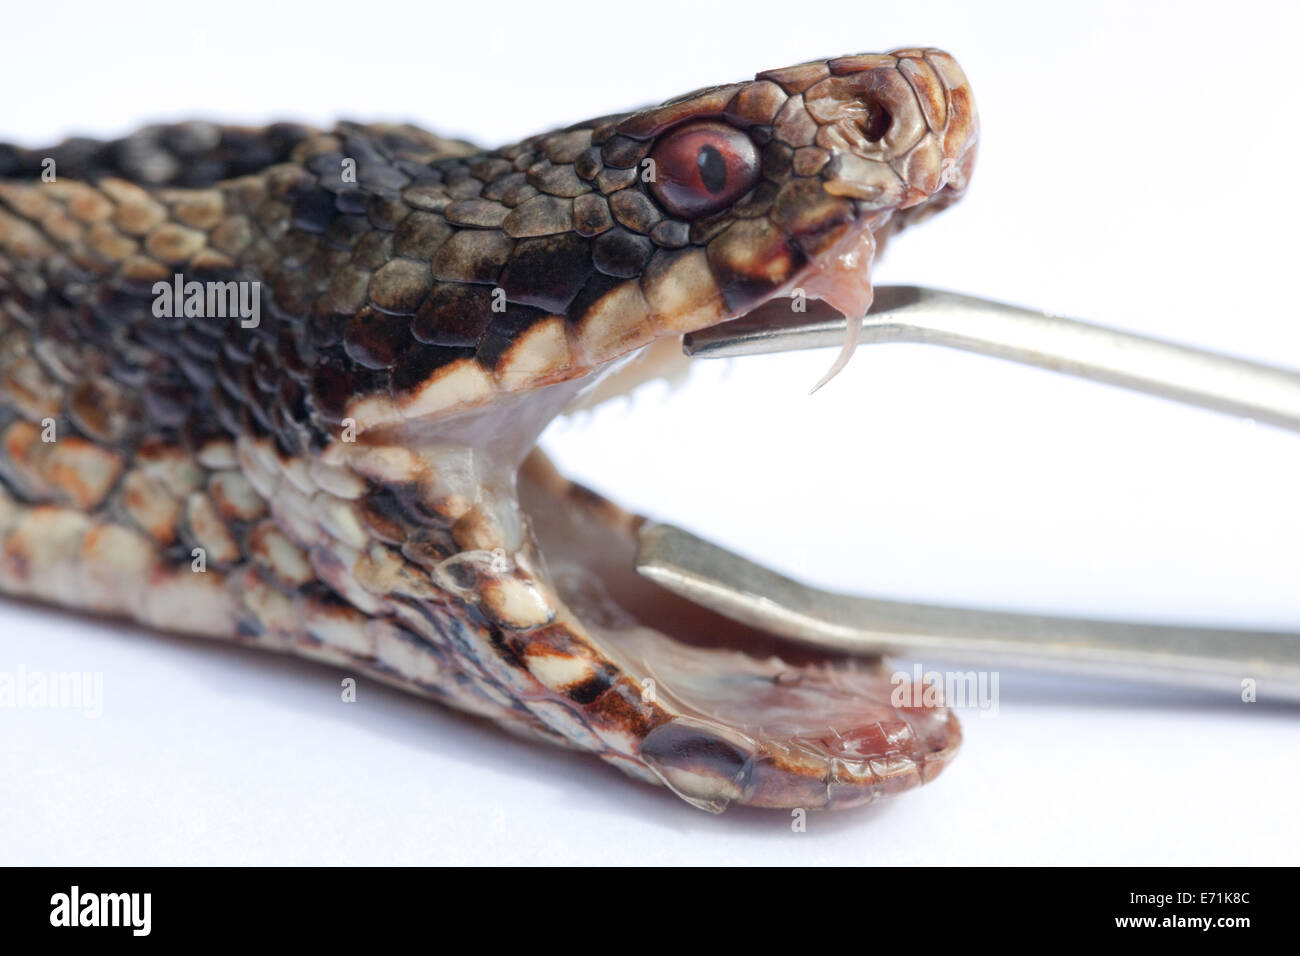 Addierer oder nördlichen Viper (Vipera Berus). Kopf der Schlange mit Jaws durch Zange offen gehalten; aufschlussreiche Zähne einschließlich rechten Fang. Stockfoto